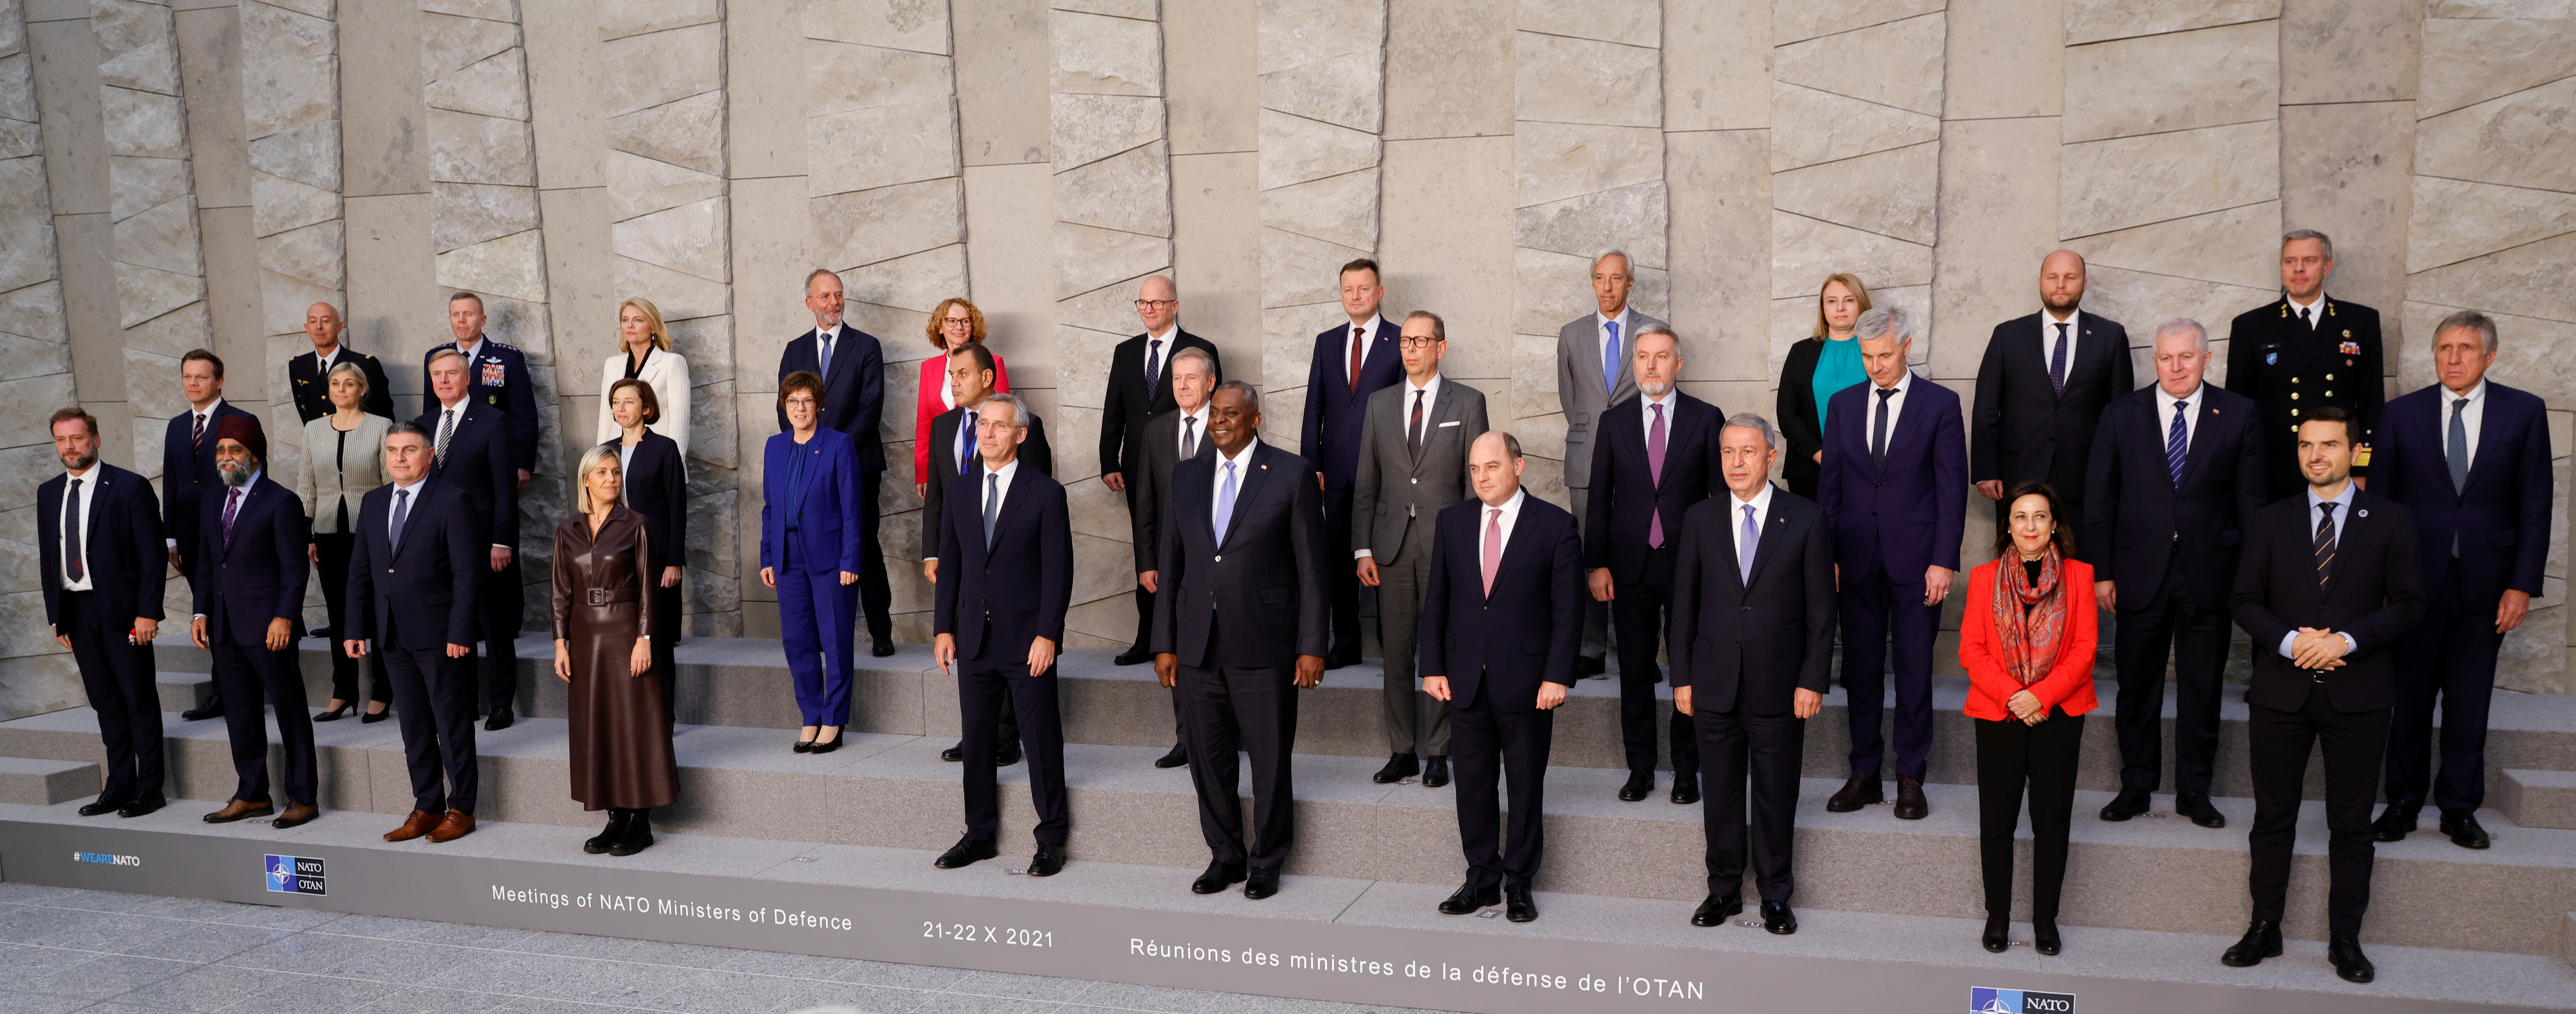 Austin y Stoltenberg posan junto al resto de los ministros de Defensa de la OTAN en la foto oficial del encuentro en Bruselas (Foto: REUTERS/Pascal Rossignol)